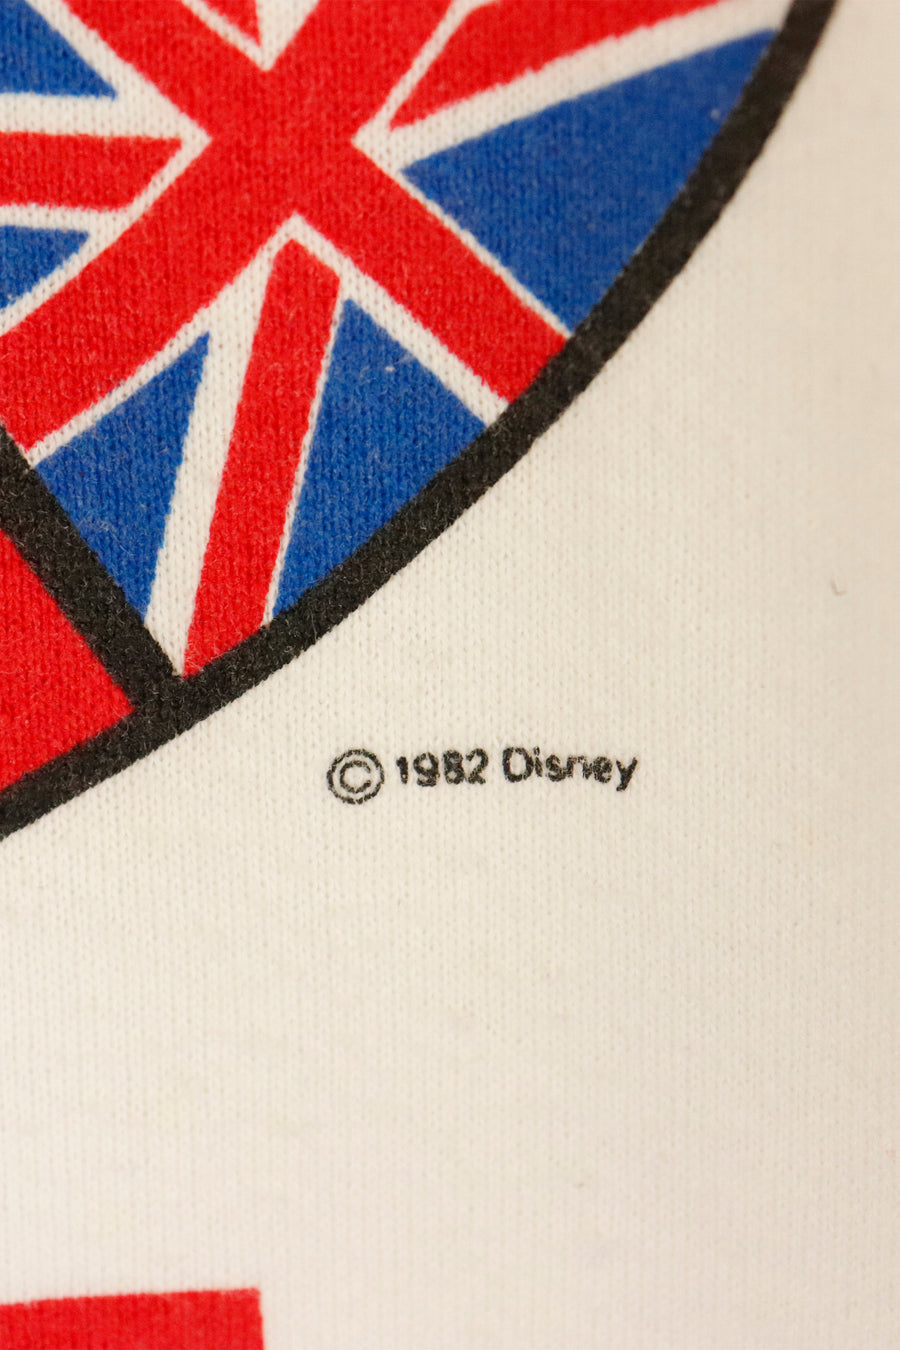 Vintage 1982 Disney Epcot Centre Graphic Sweatshirt Sz XL